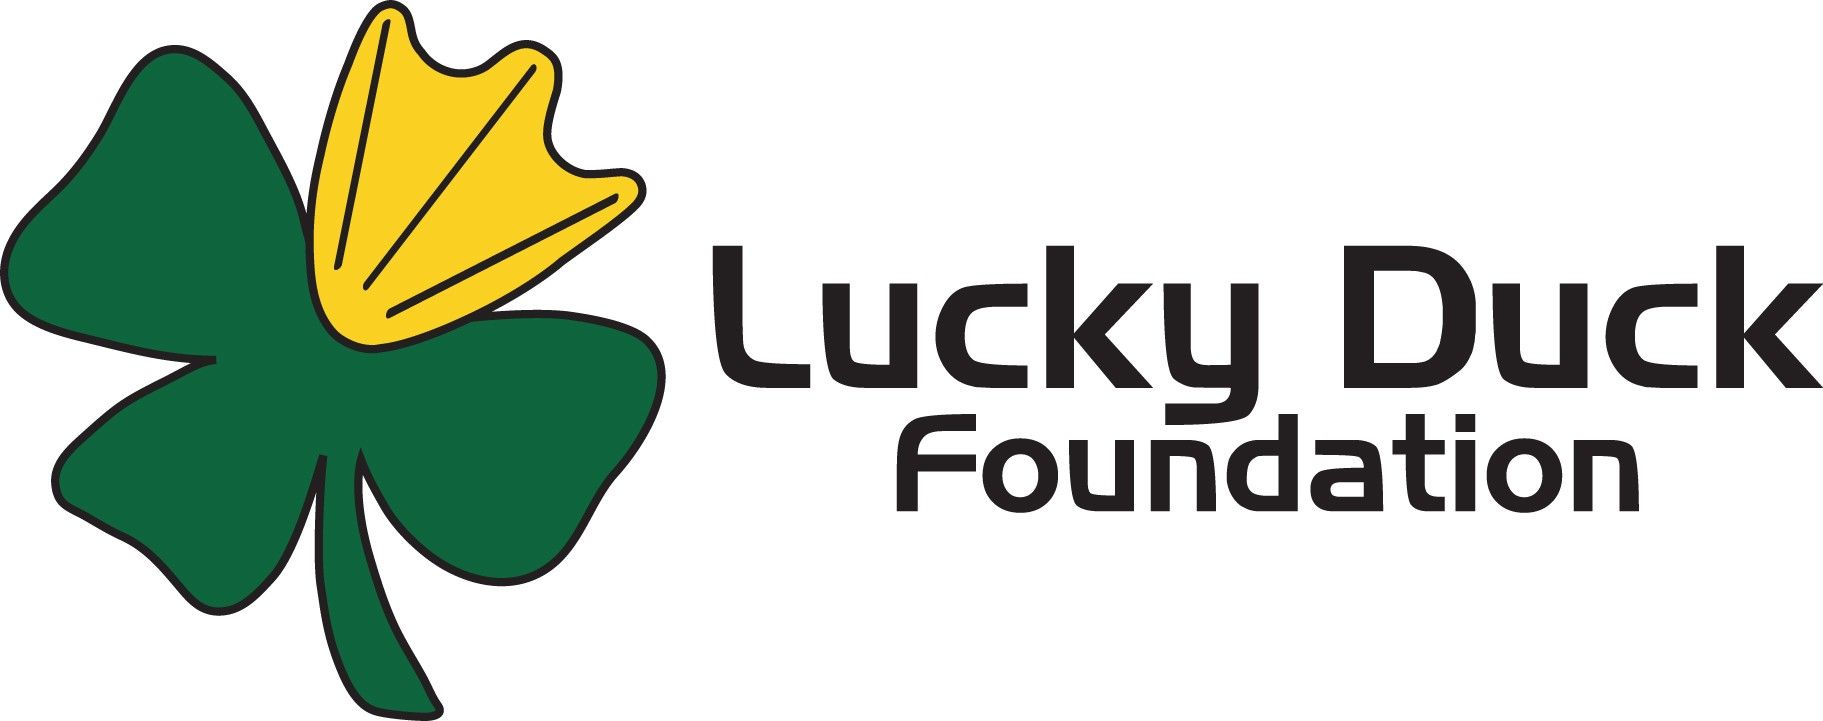 Lucky Duck Foundation